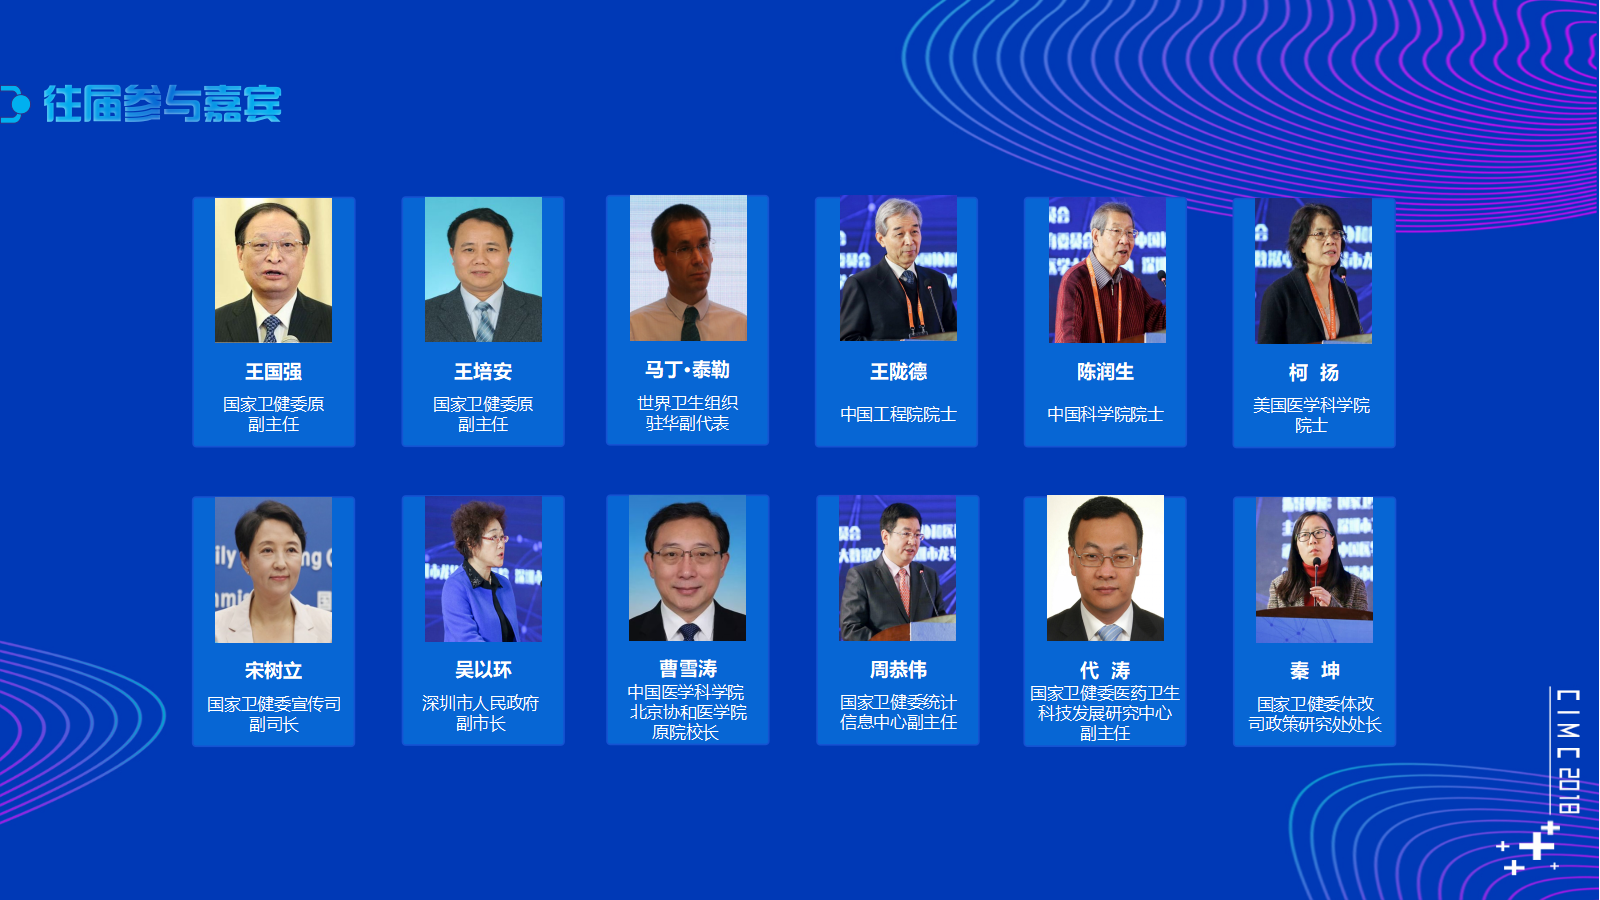 2018第四届中国互联网医疗大会